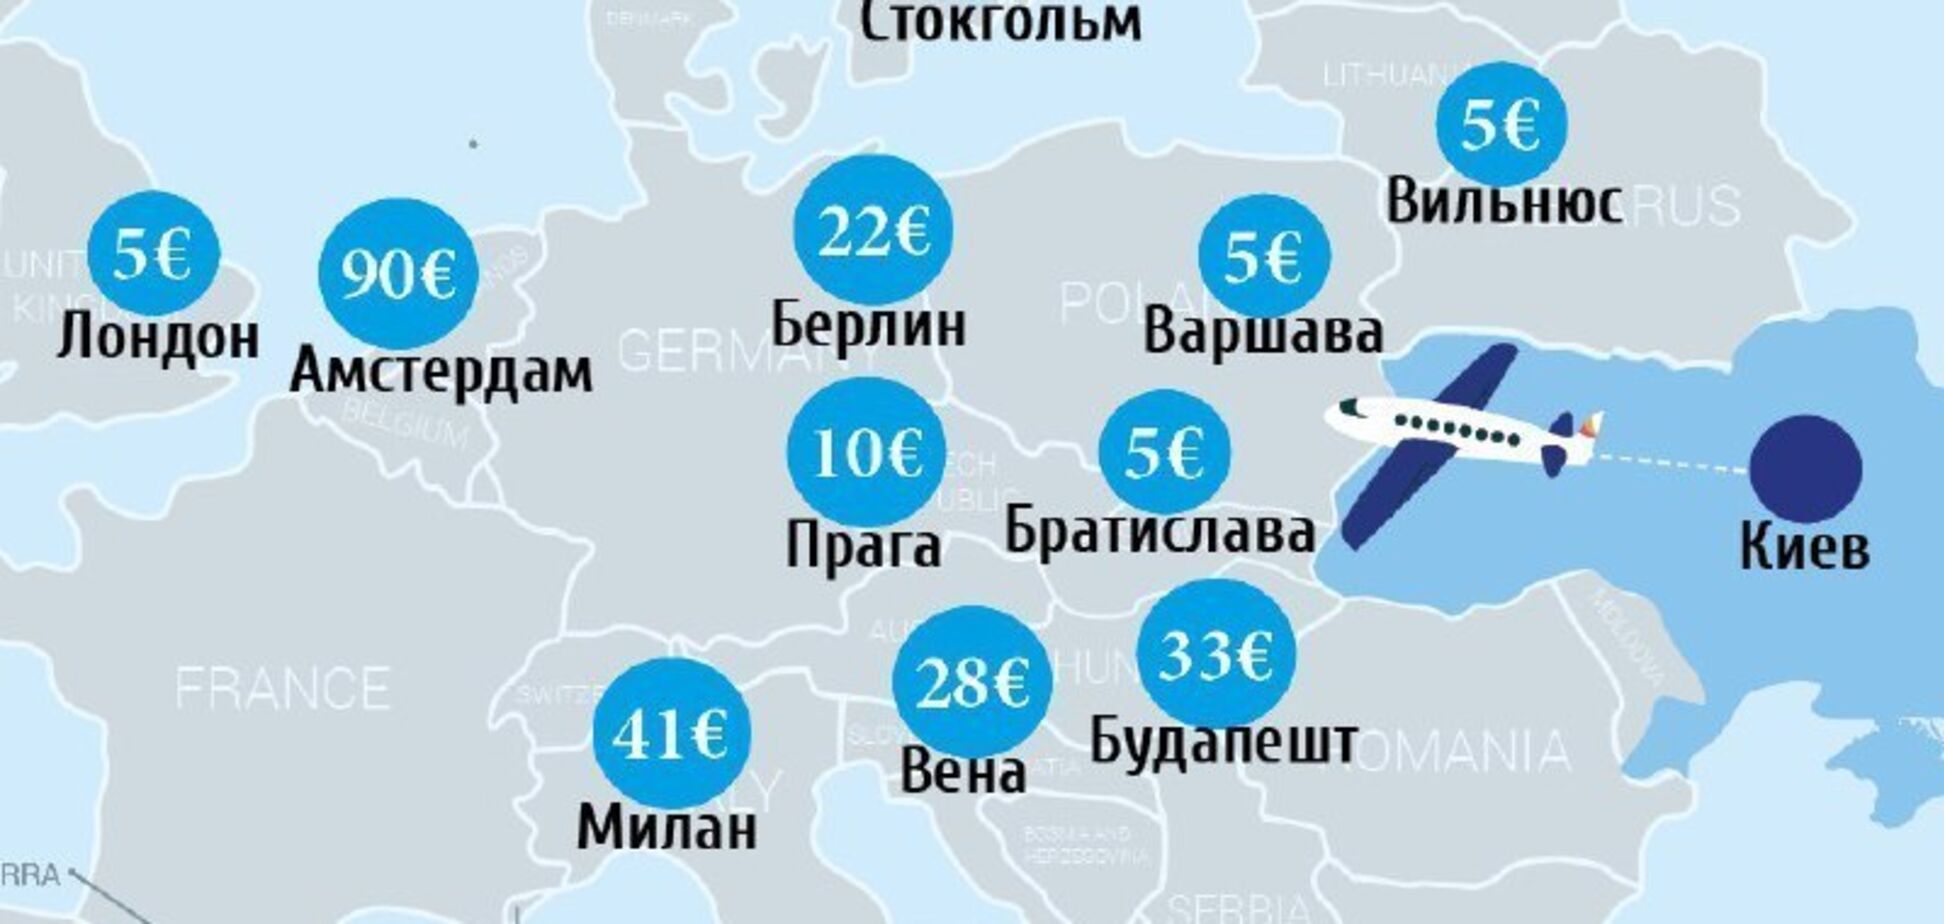 В ЄС за 5 євро: що пропонують українцям лоукостери